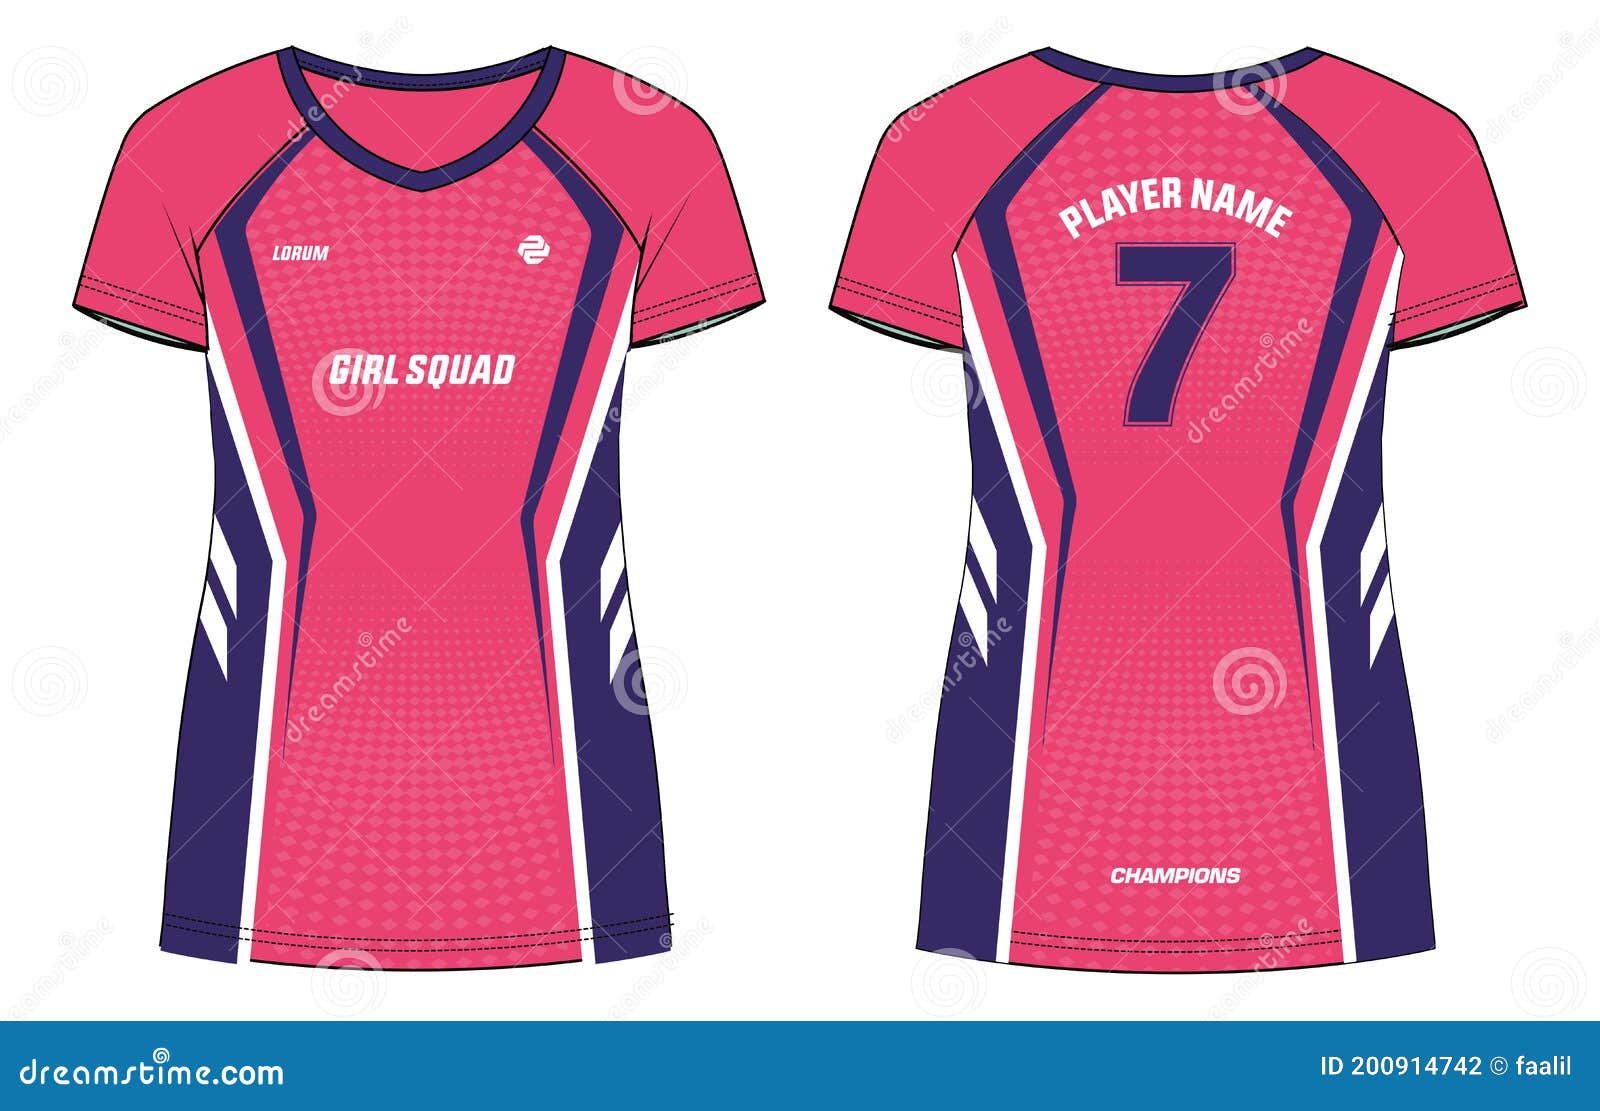 Camiseta de diseño deportivo para mujer, maqueta de jersey de fútbol para  club de fútbol. plantilla de uniforme de polo.